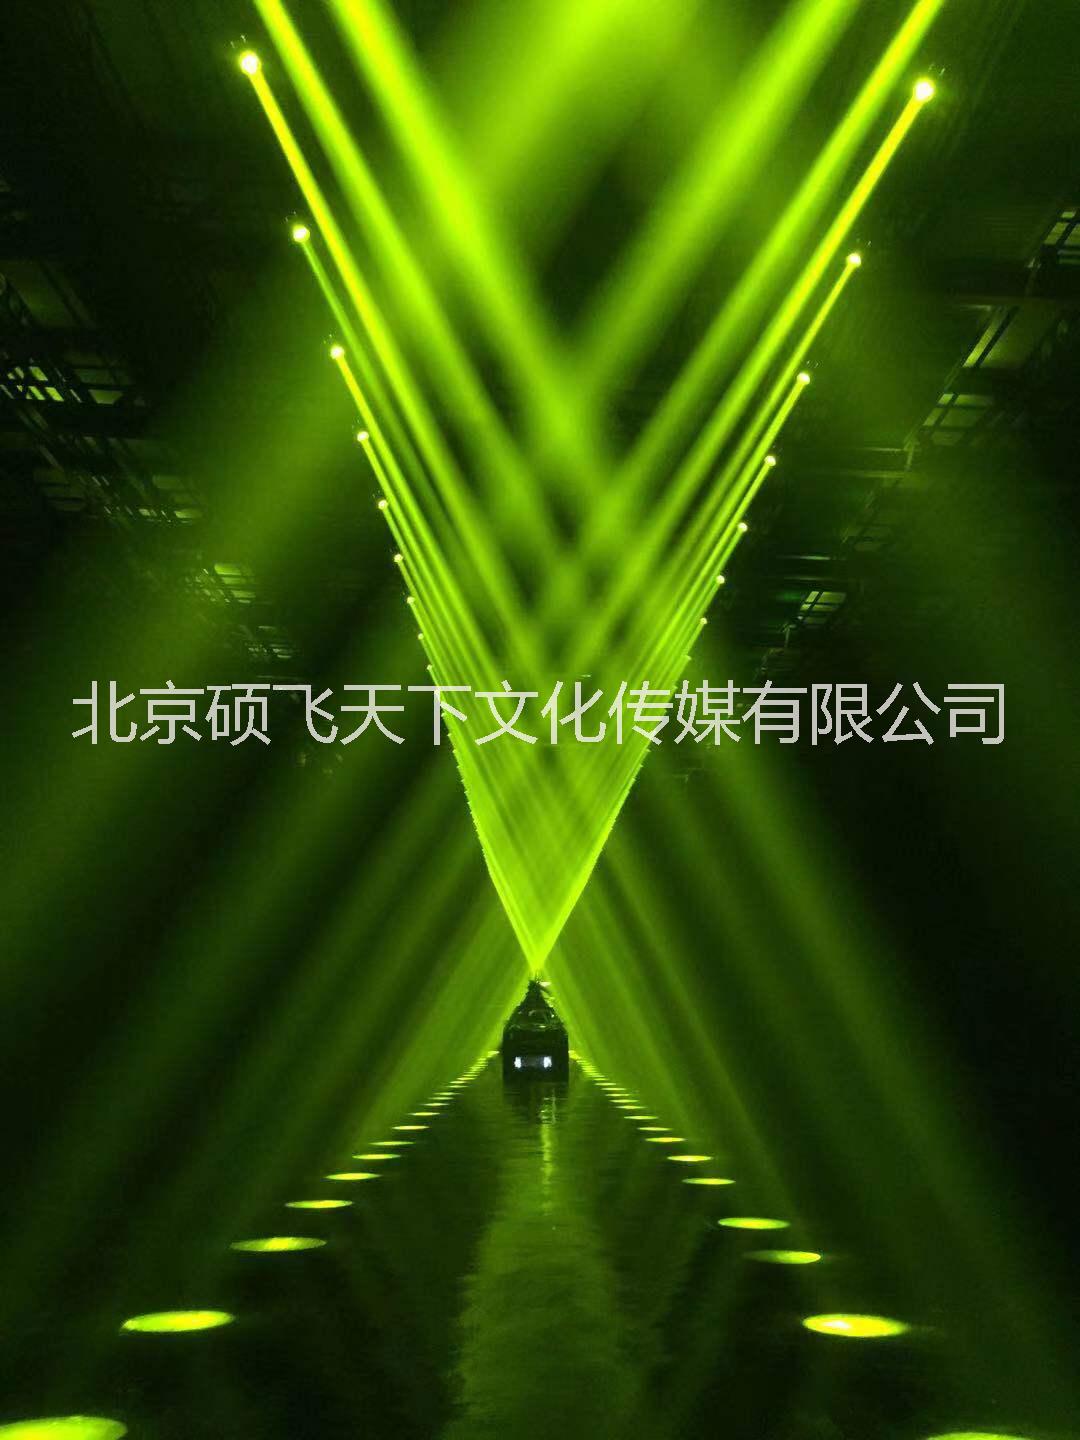 北京音响技术服务灯光音响舞台租赁灯光音响技术服务,灯光音响舞台设备租赁